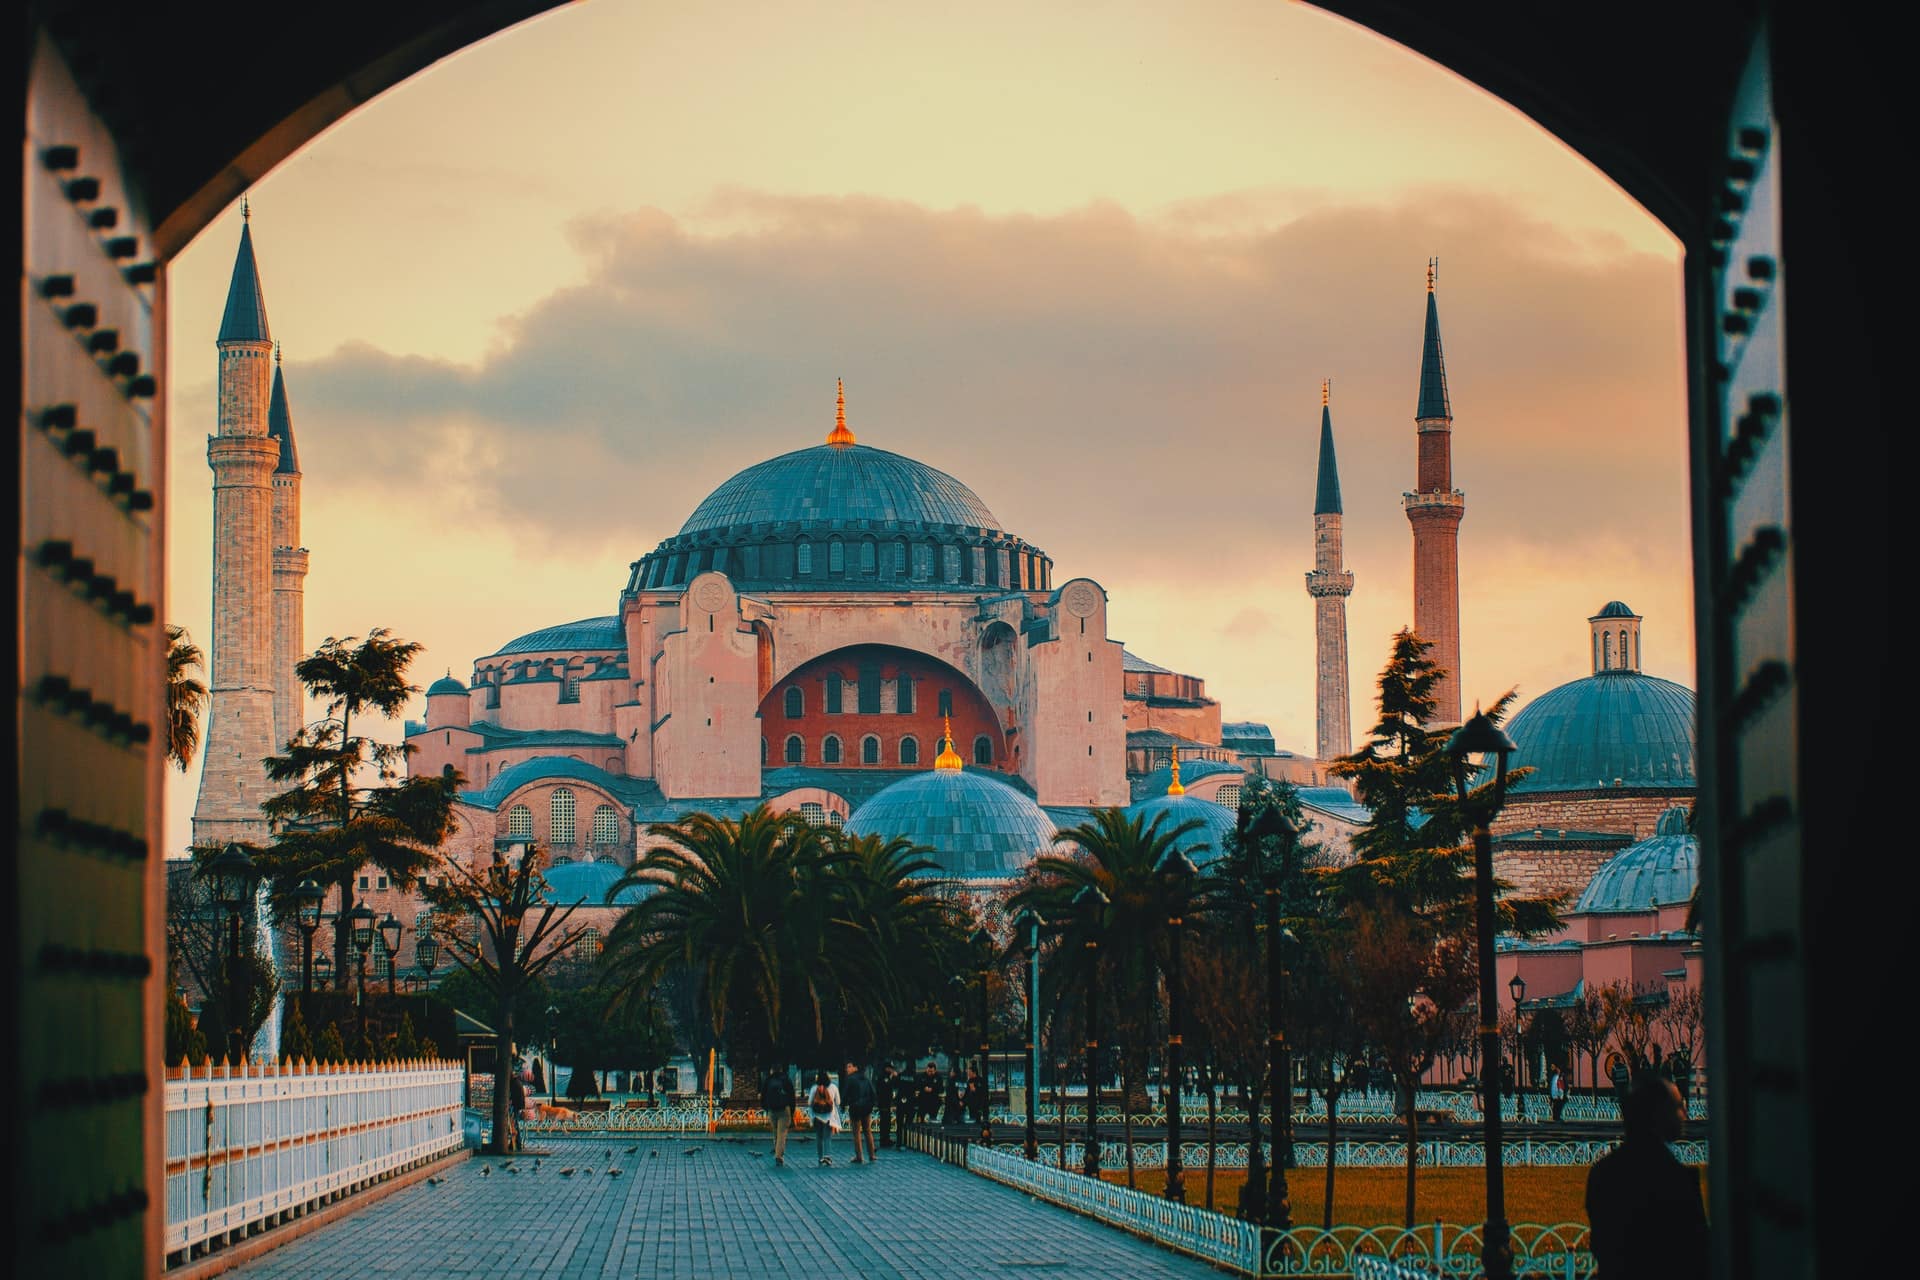 Esta imagen muestra Hagia Sophia en Estambul, probablemente el sitio histórico más famoso de Turquía, con sus paredes rosadas y sus altos minaretes.